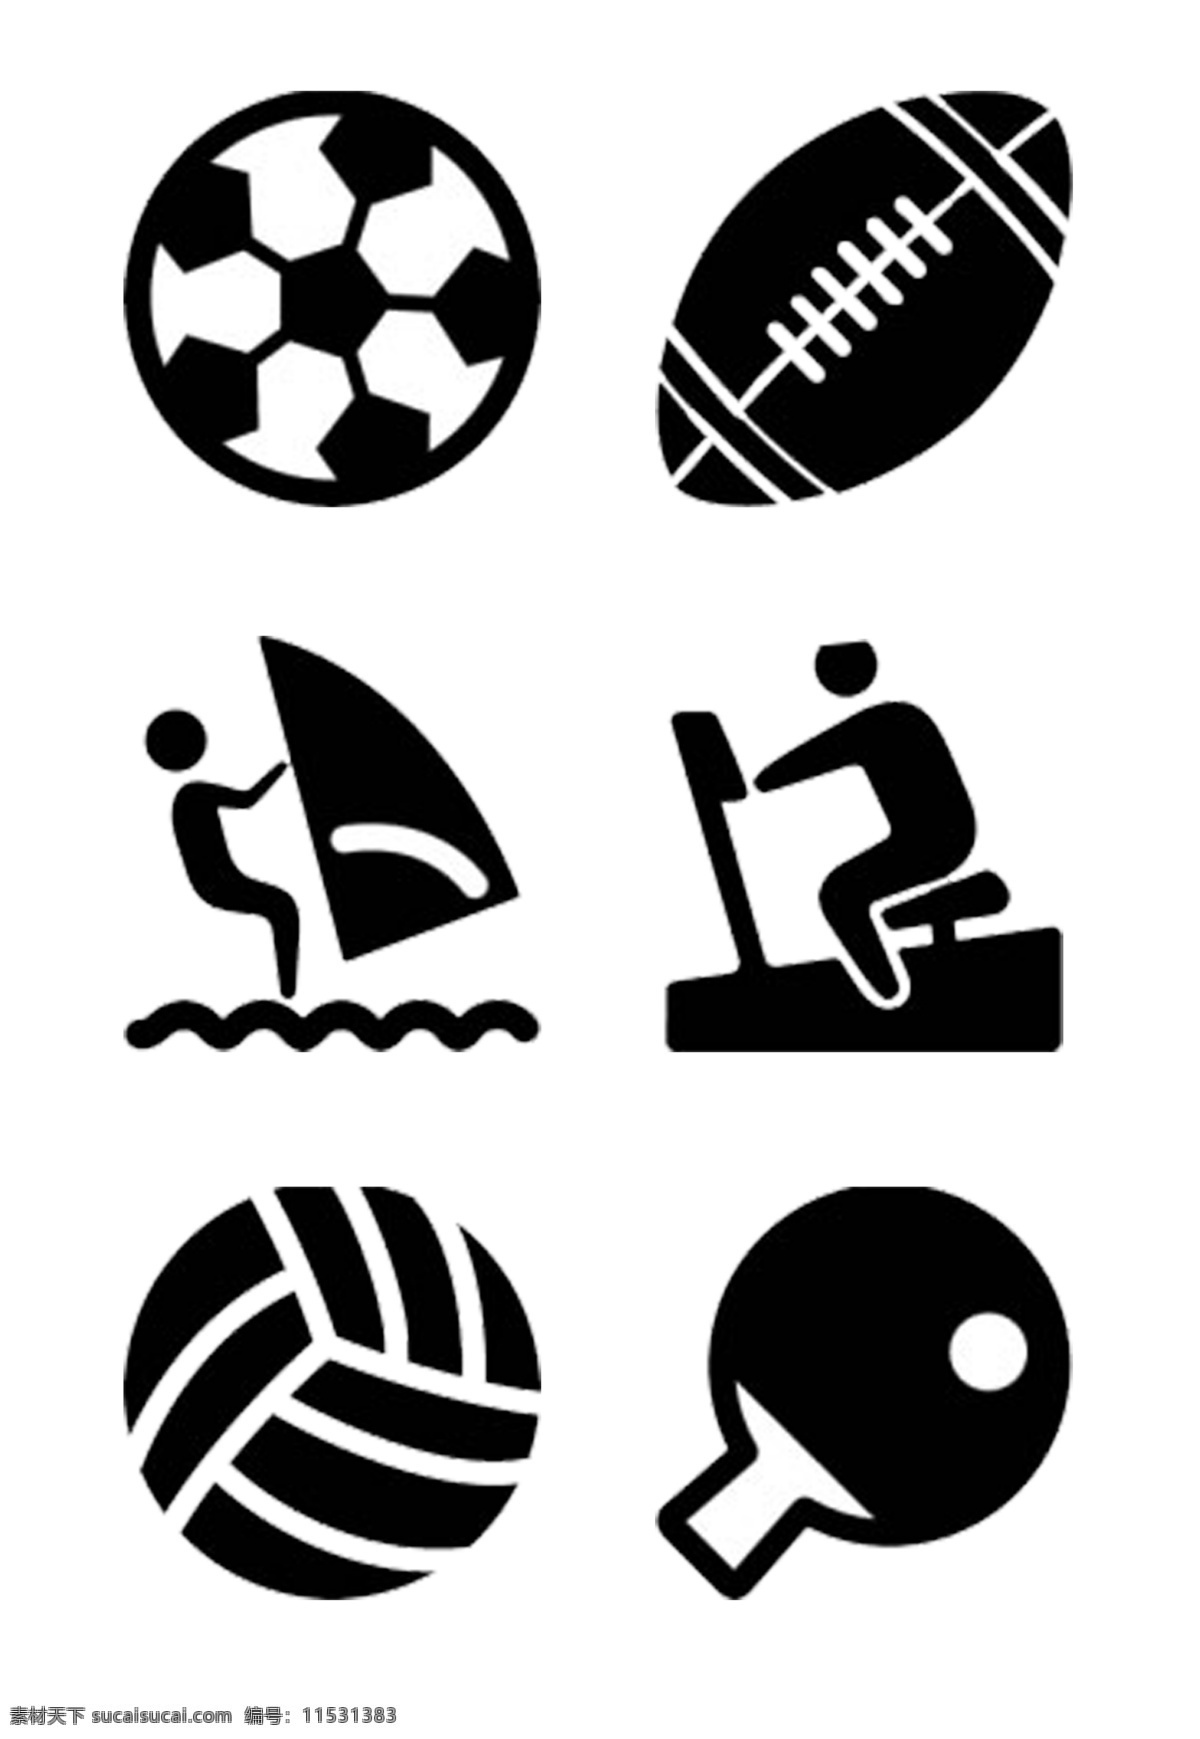 运动 风格 简单 图标素材 各种球类运动 强身健体 免抠 png格式 足球 棒球 可分开使用 用于装饰